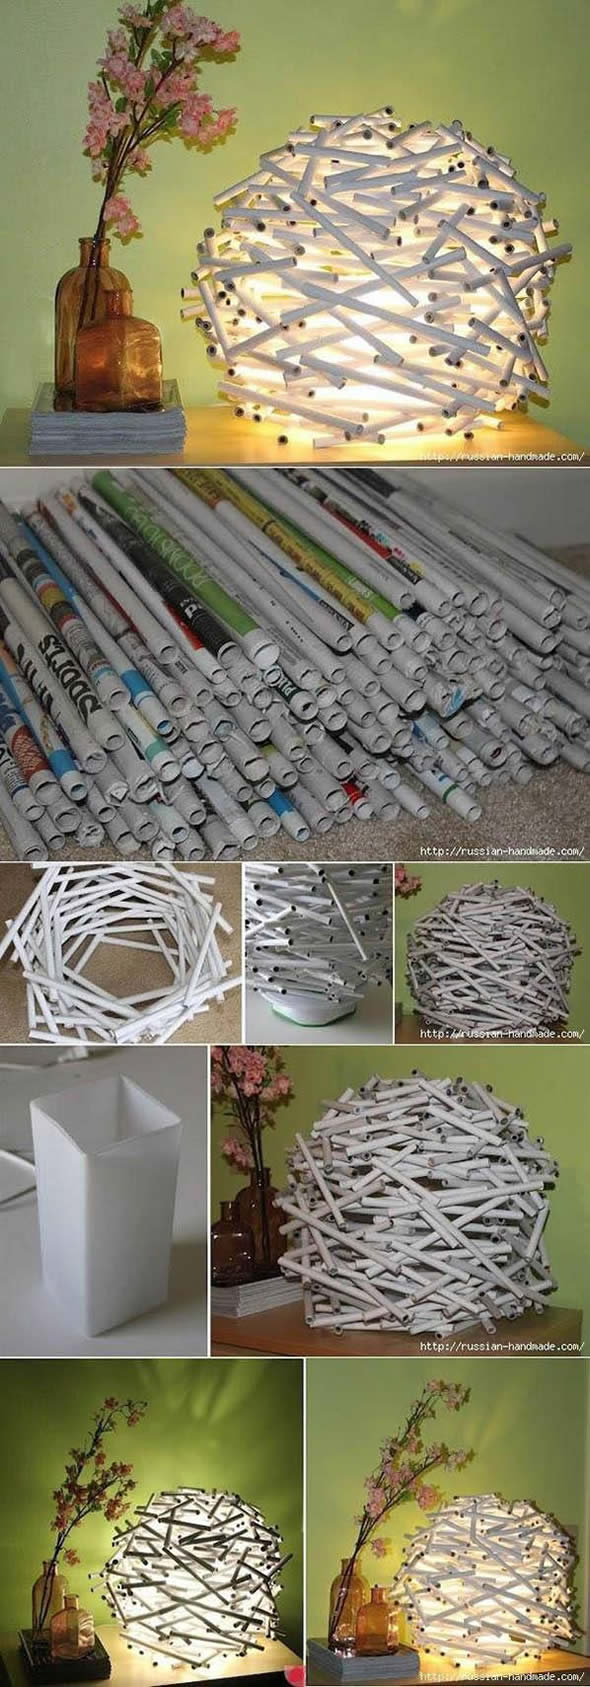 Faça Lindos Artesanatos com Reciclagem